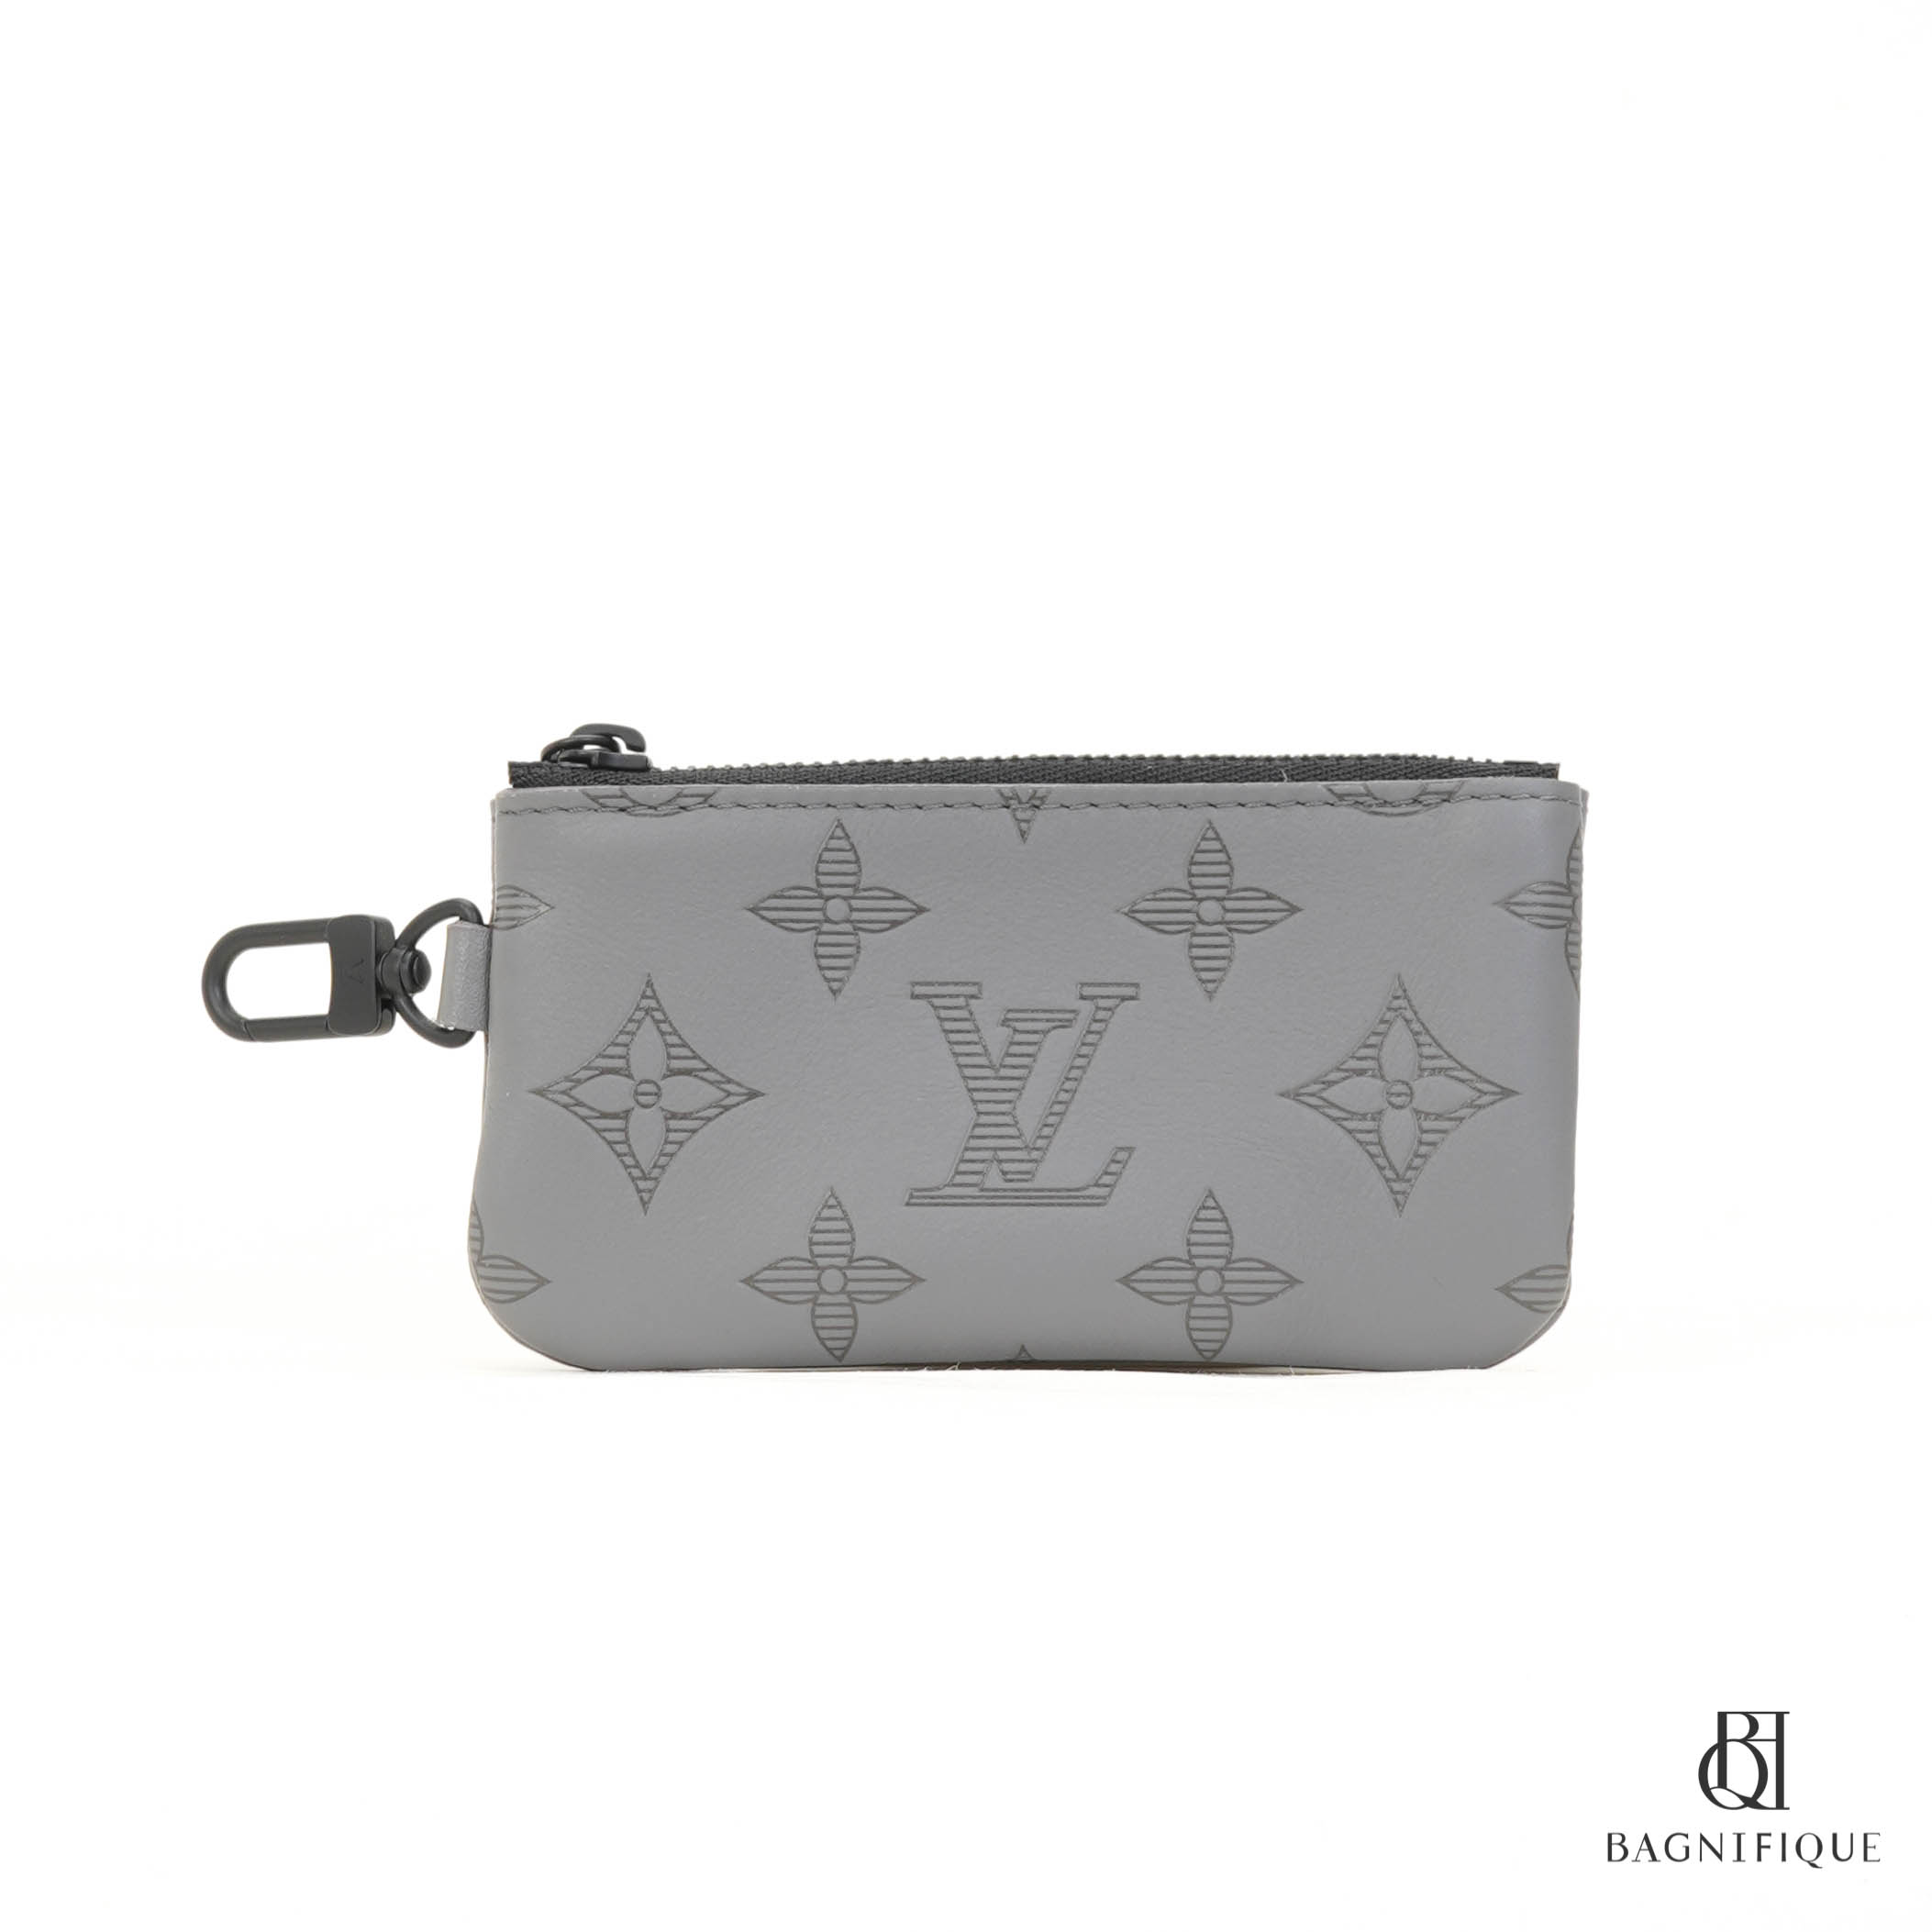 Shop Louis Vuitton MONOGRAM EMPREINTE Key pouch (M80885) by Sincerity_m639